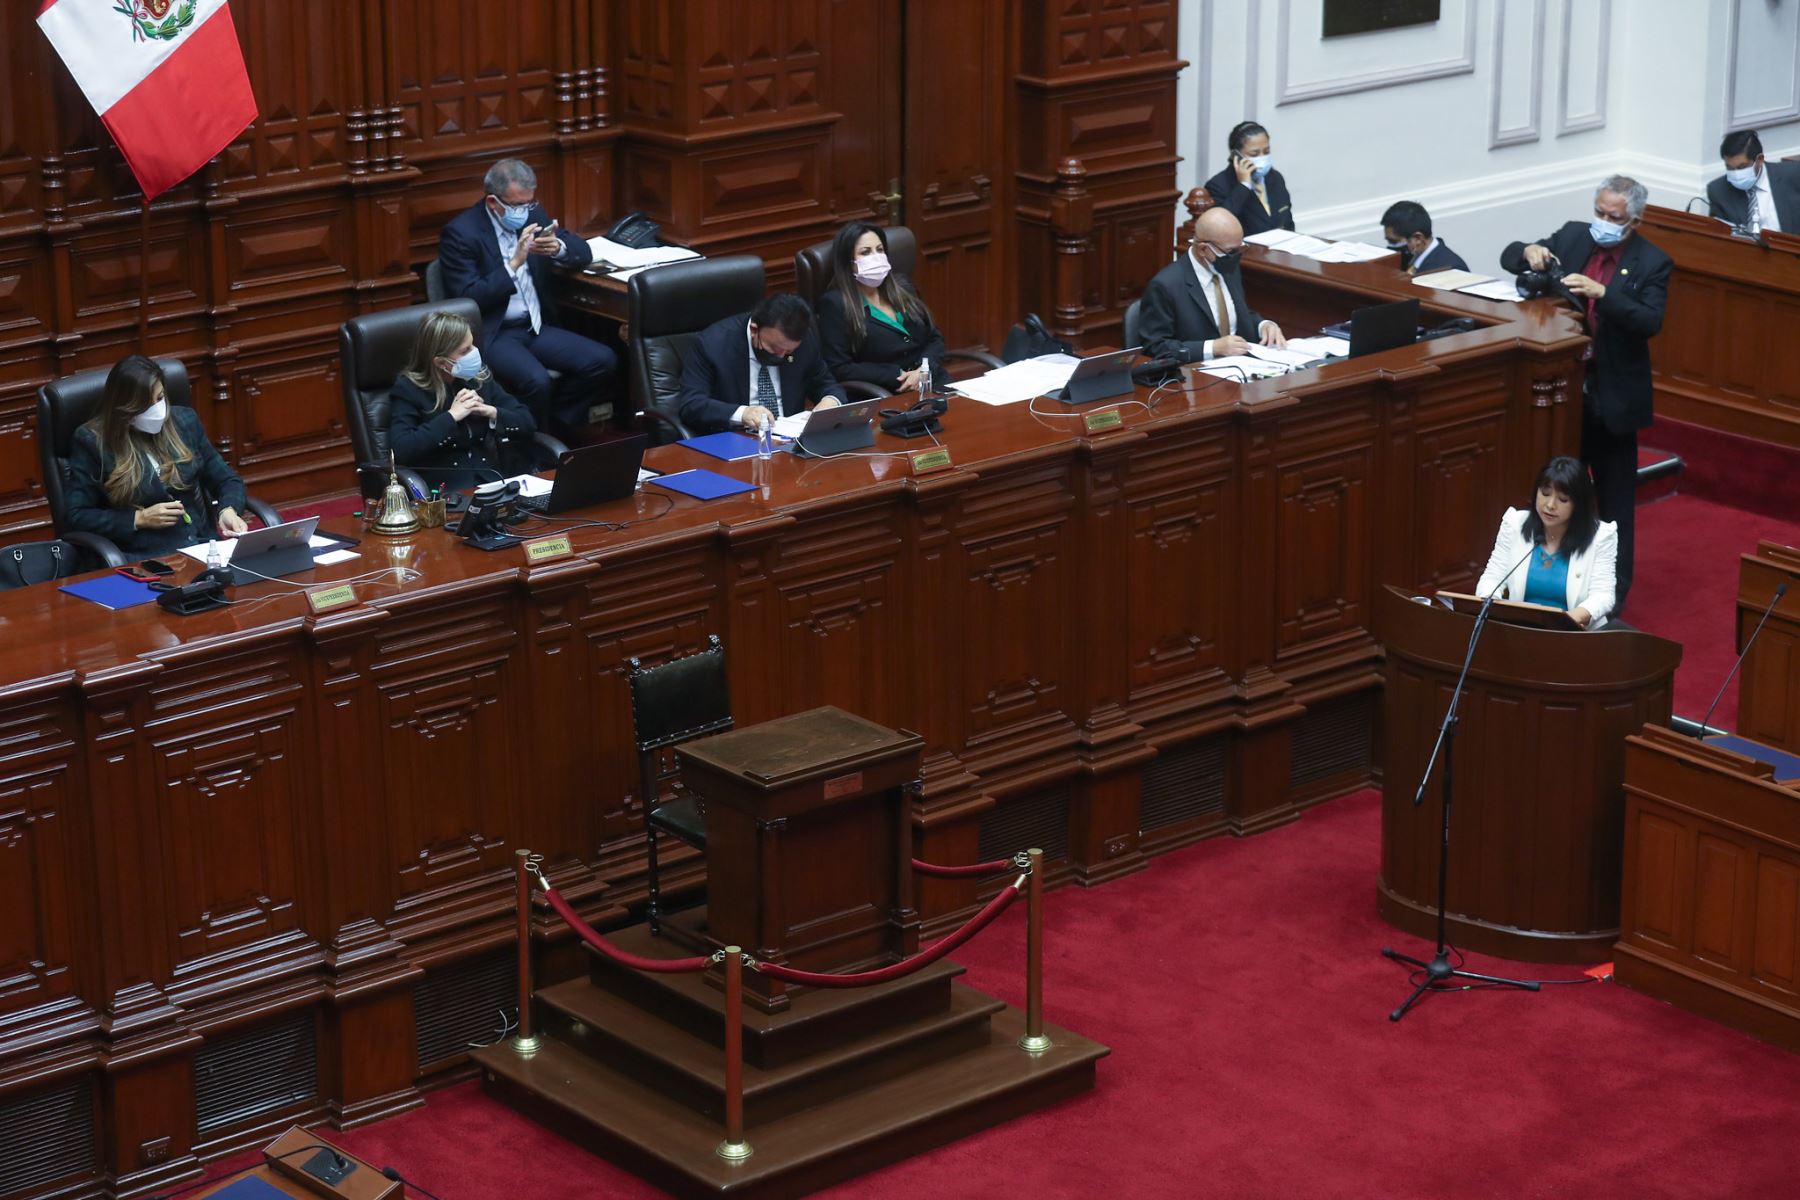 La jefa del Gabinete Ministerial, Mirtha Vásquez, expone la política general del Gobierno en el pleno del Congreso, tras lo cual solicitará el voto de confianza. Foto: Congreso